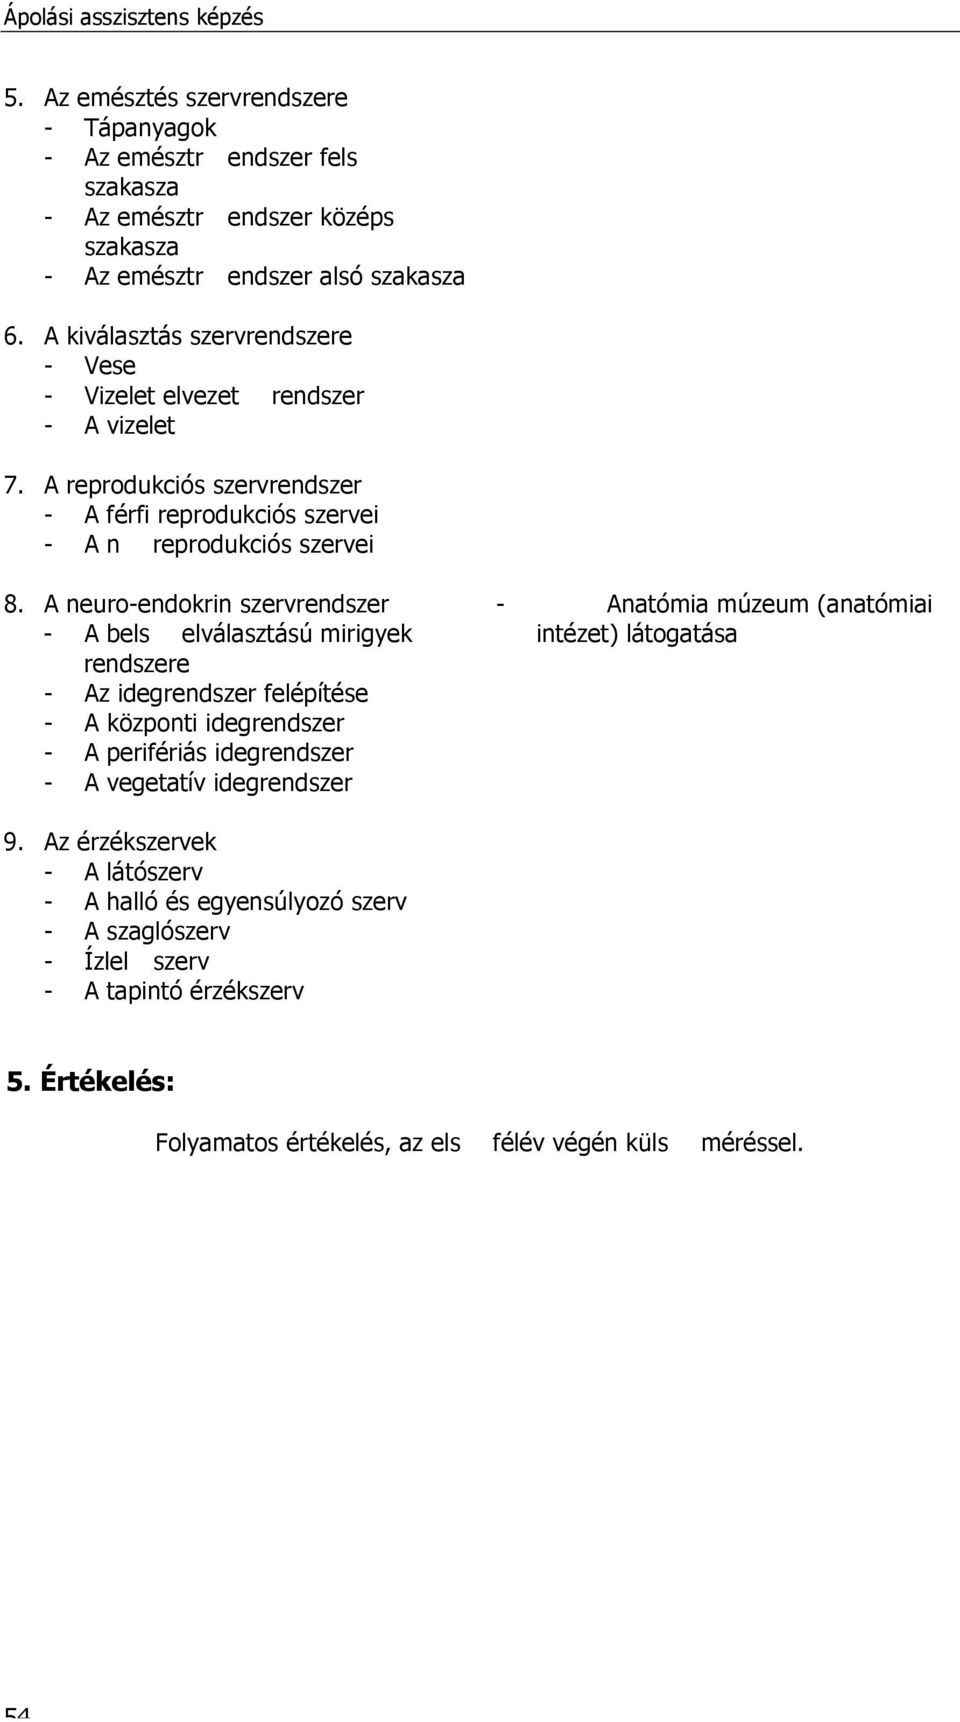 A neuro-endokrin szervrendszer - A bels elválasztású mirigyek rendszere - Az idegrendszer felépítése - A központi idegrendszer - A perifériás idegrendszer - A vegetatív idegrendszer - Anatómia